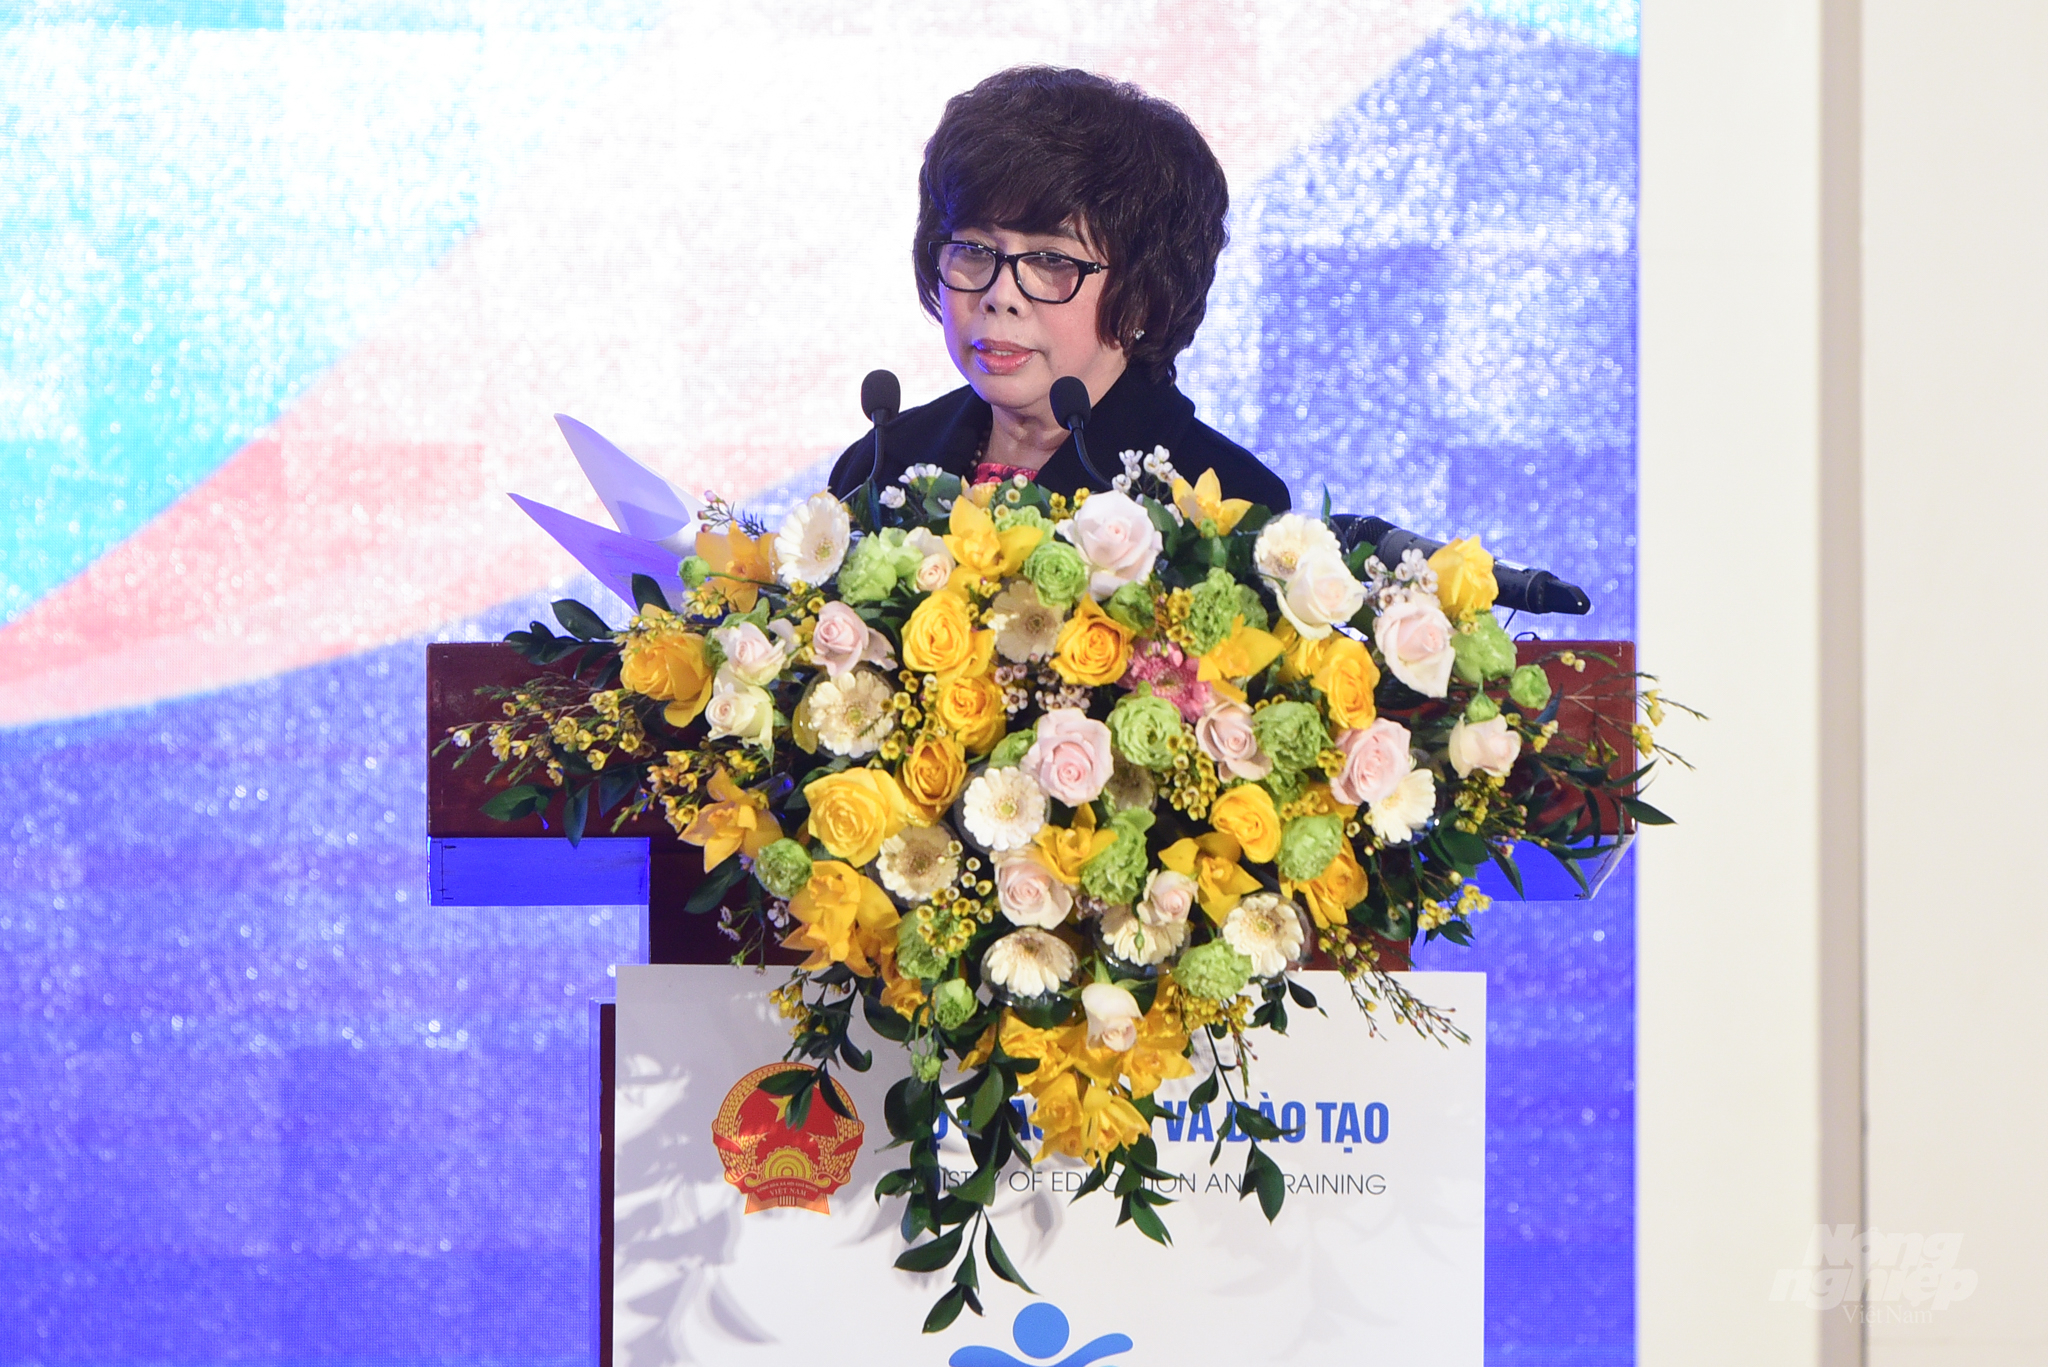 Bà Thái Hương, Nhà sáng lập, Chủ tịch Hội đồng chiến lược Tập đoàn TH - Đơn vị đồng hành chính cùng chương trình Sức khỏe học đường phát biểu tại lễ công bố. Ảnh: Tùng Đinh.